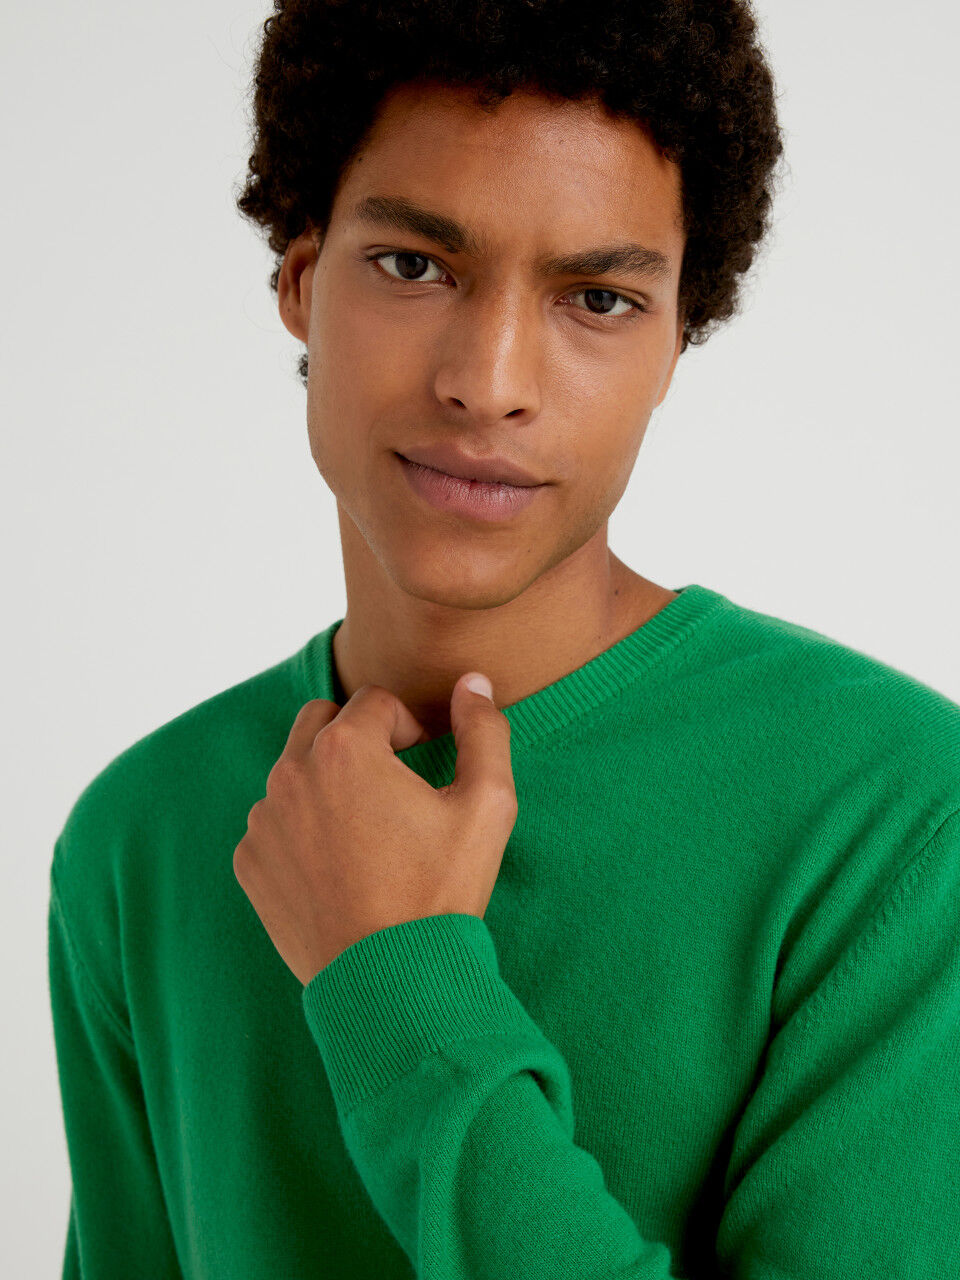 Μπλούζα πράσινη με λαιμόκοψη από αγνό μαλλί Μερινό εξατομικευμένη